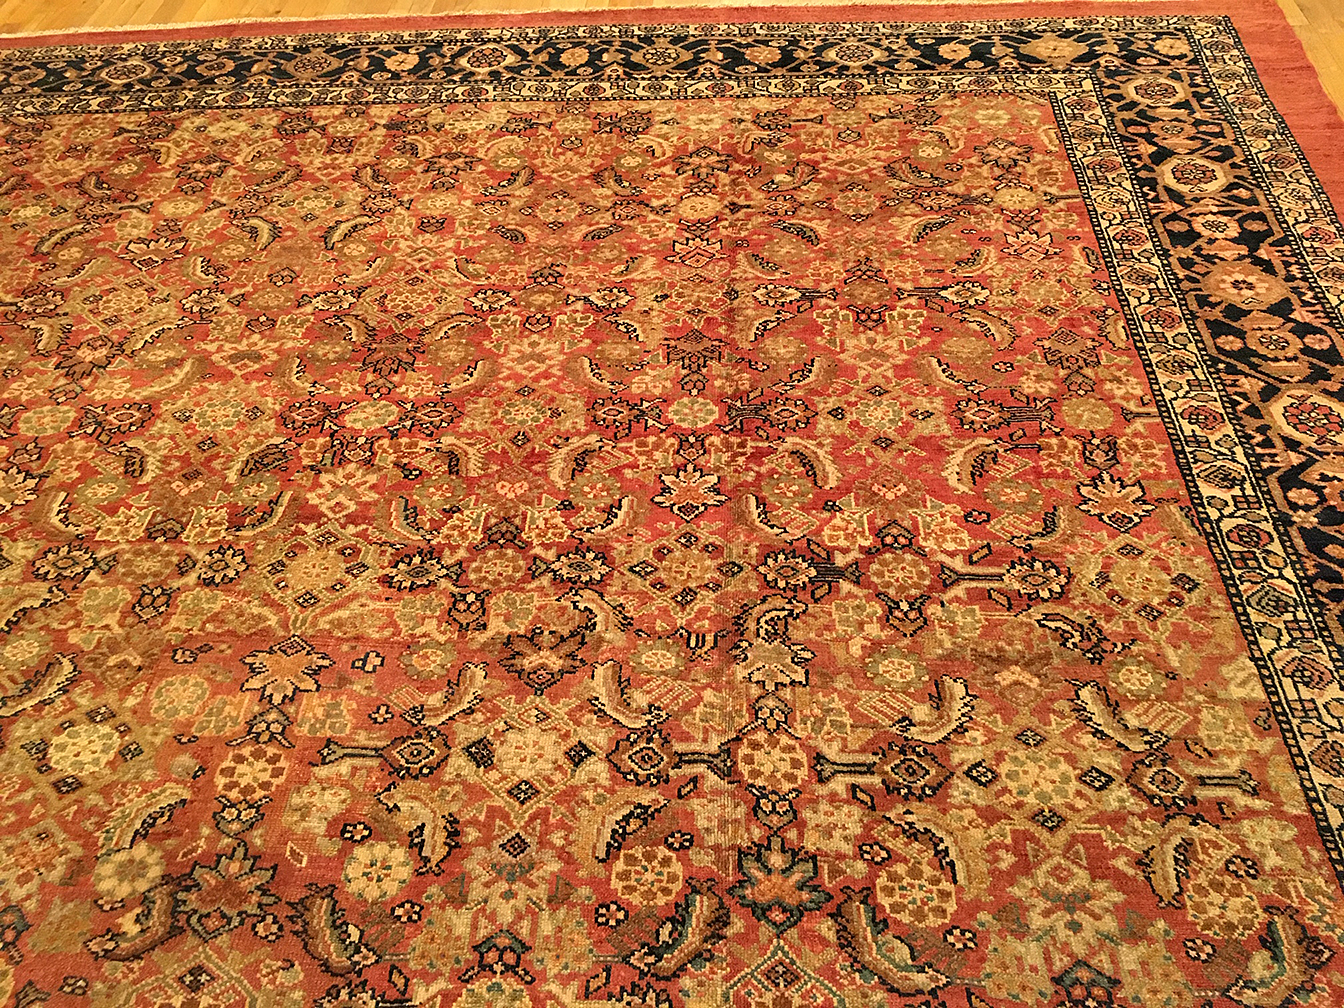 Antique sultan abad Carpet - # 54396